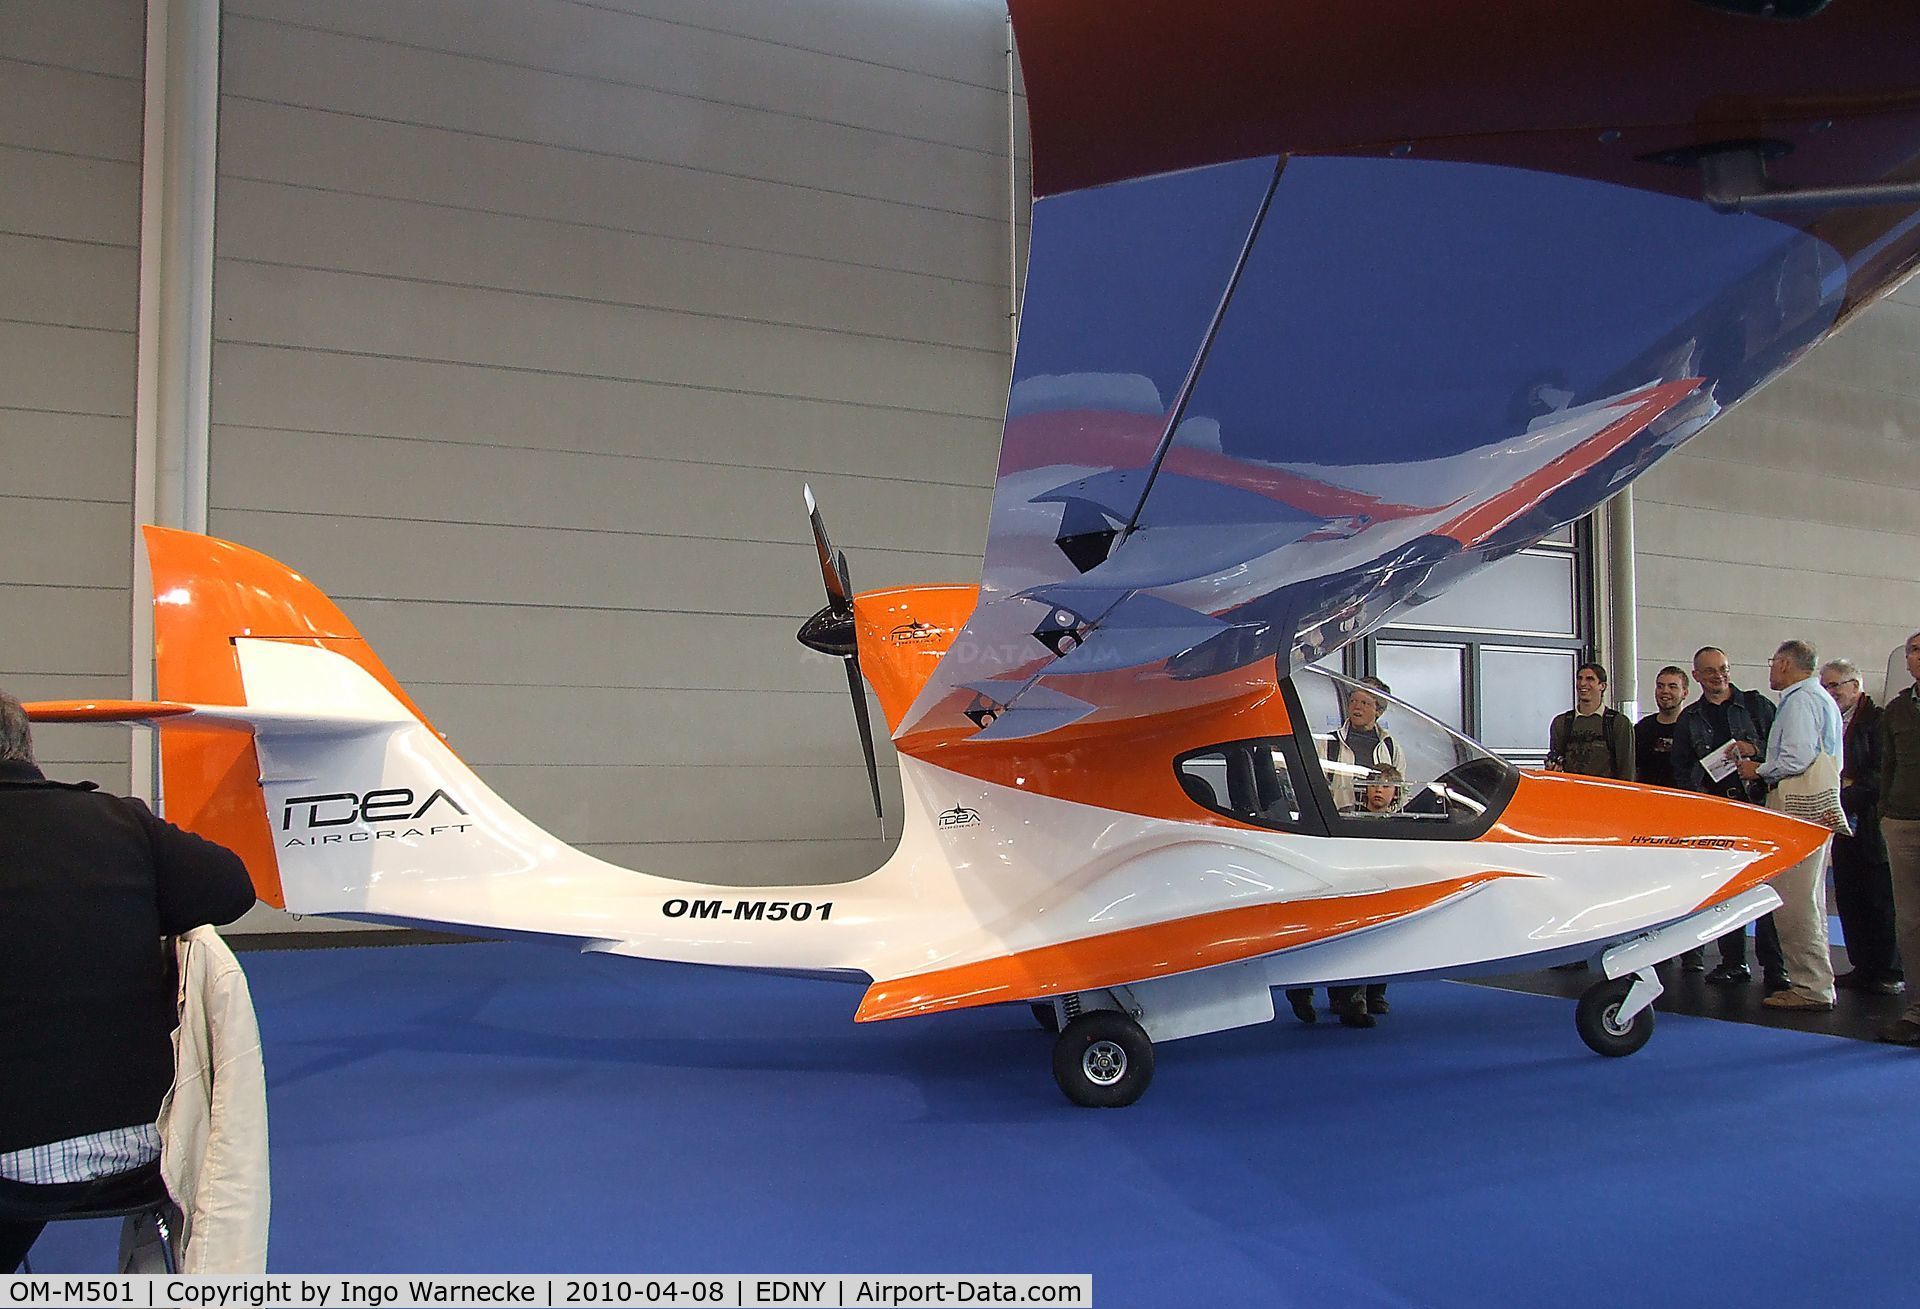 OM-M501, Idea Aircraft Hydropteron C/N unknown_OM-M501, Idea Aircraft Hydropteron at the AERO 2010, Friedrichshafen